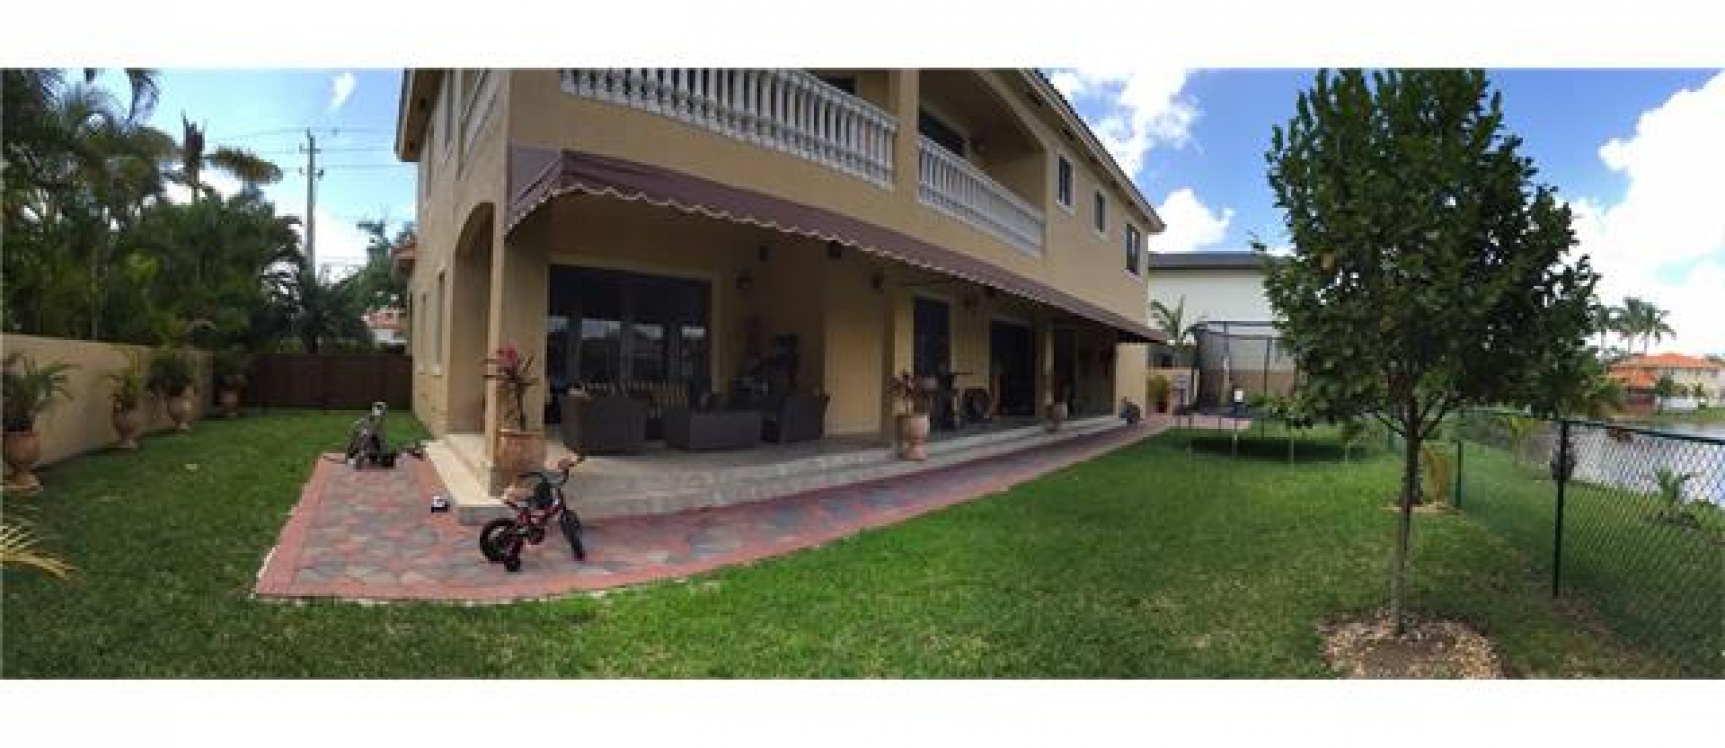 GeoBienes - Casa en MIAMI LAKES - Florida - Plusvalia Guayaquil Casas de venta y alquiler Inmobiliaria Ecuador